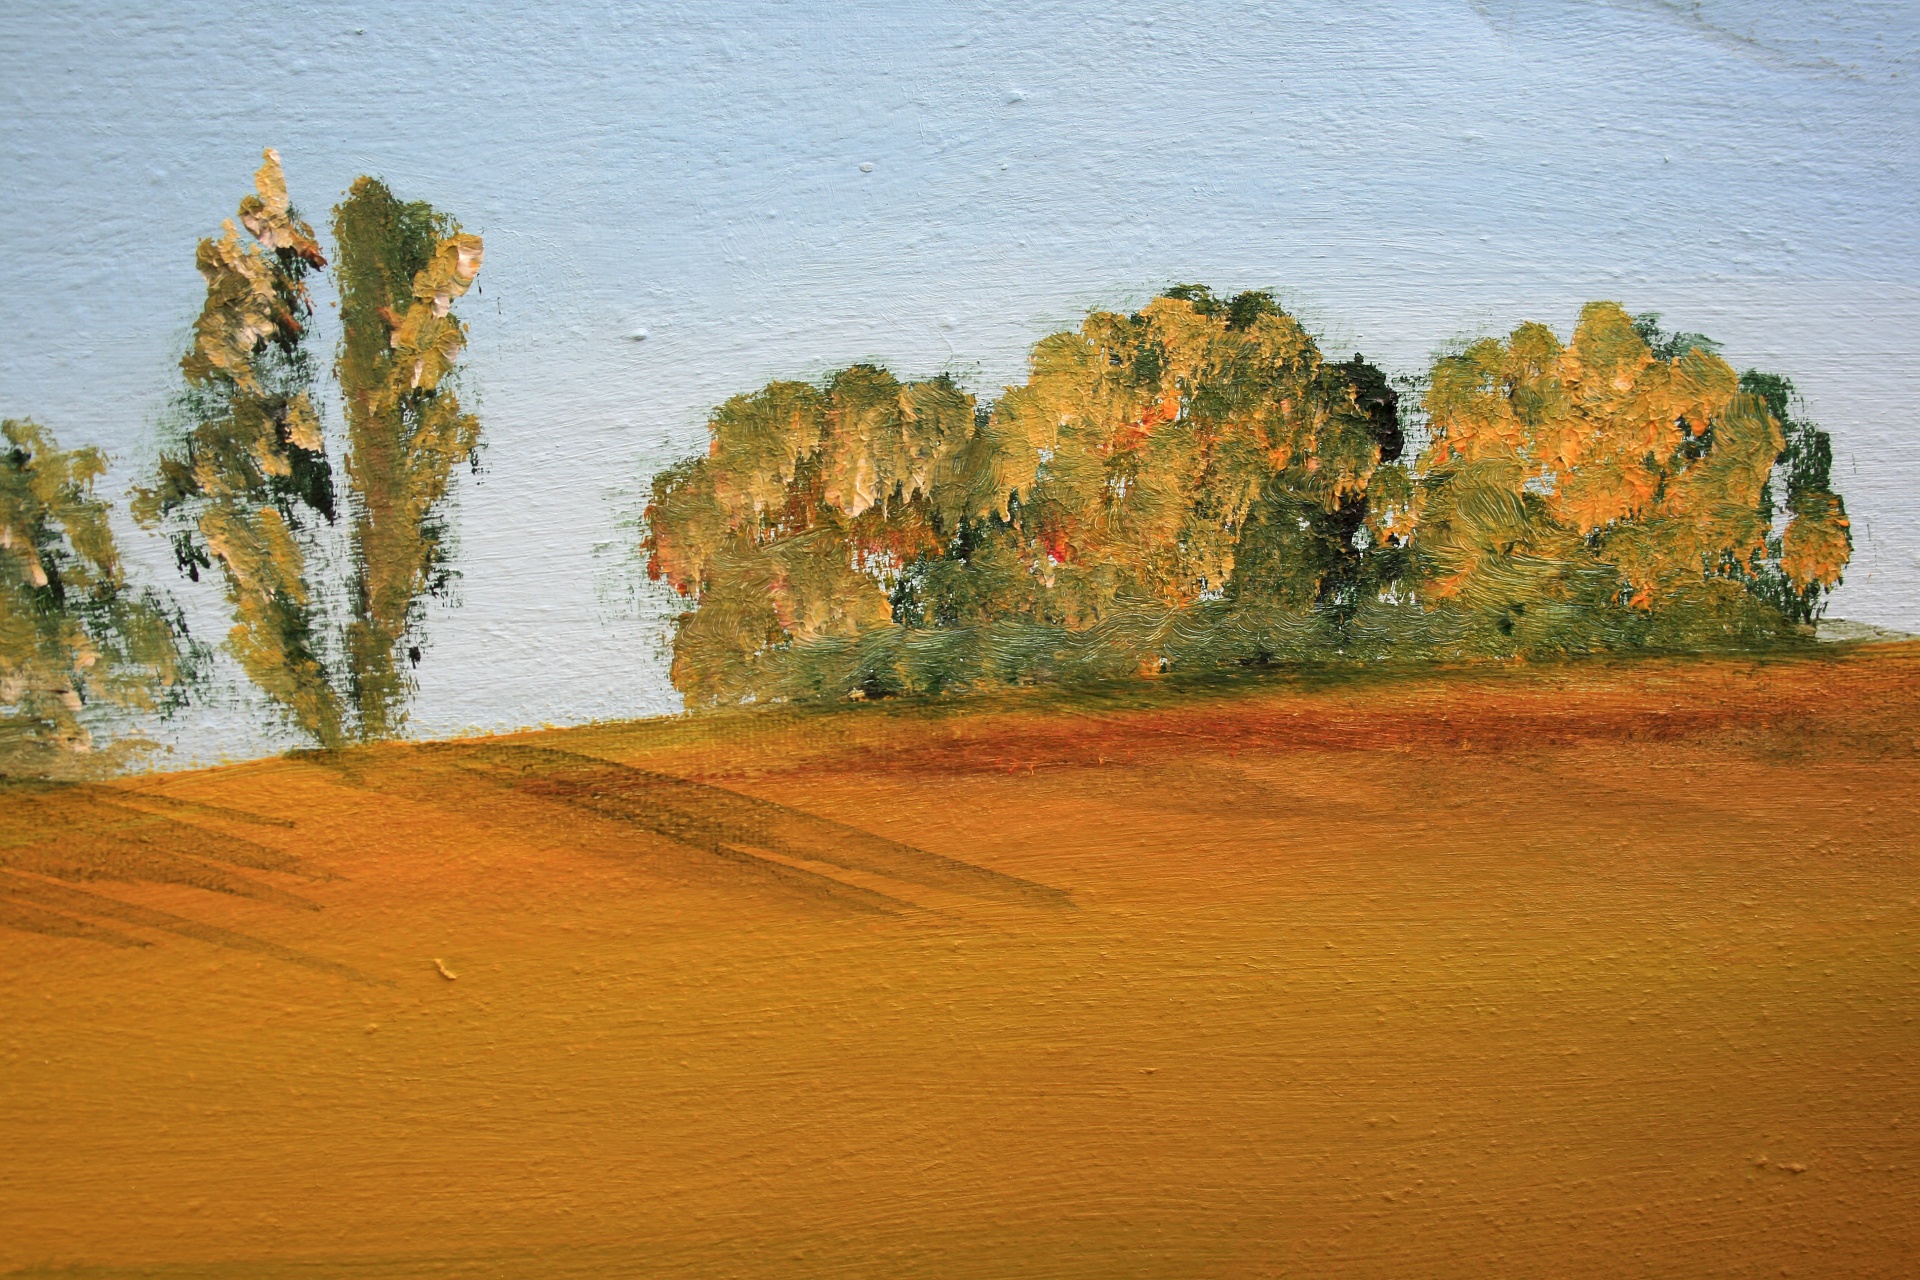 Detalhe da pintura a óleo da paisagem